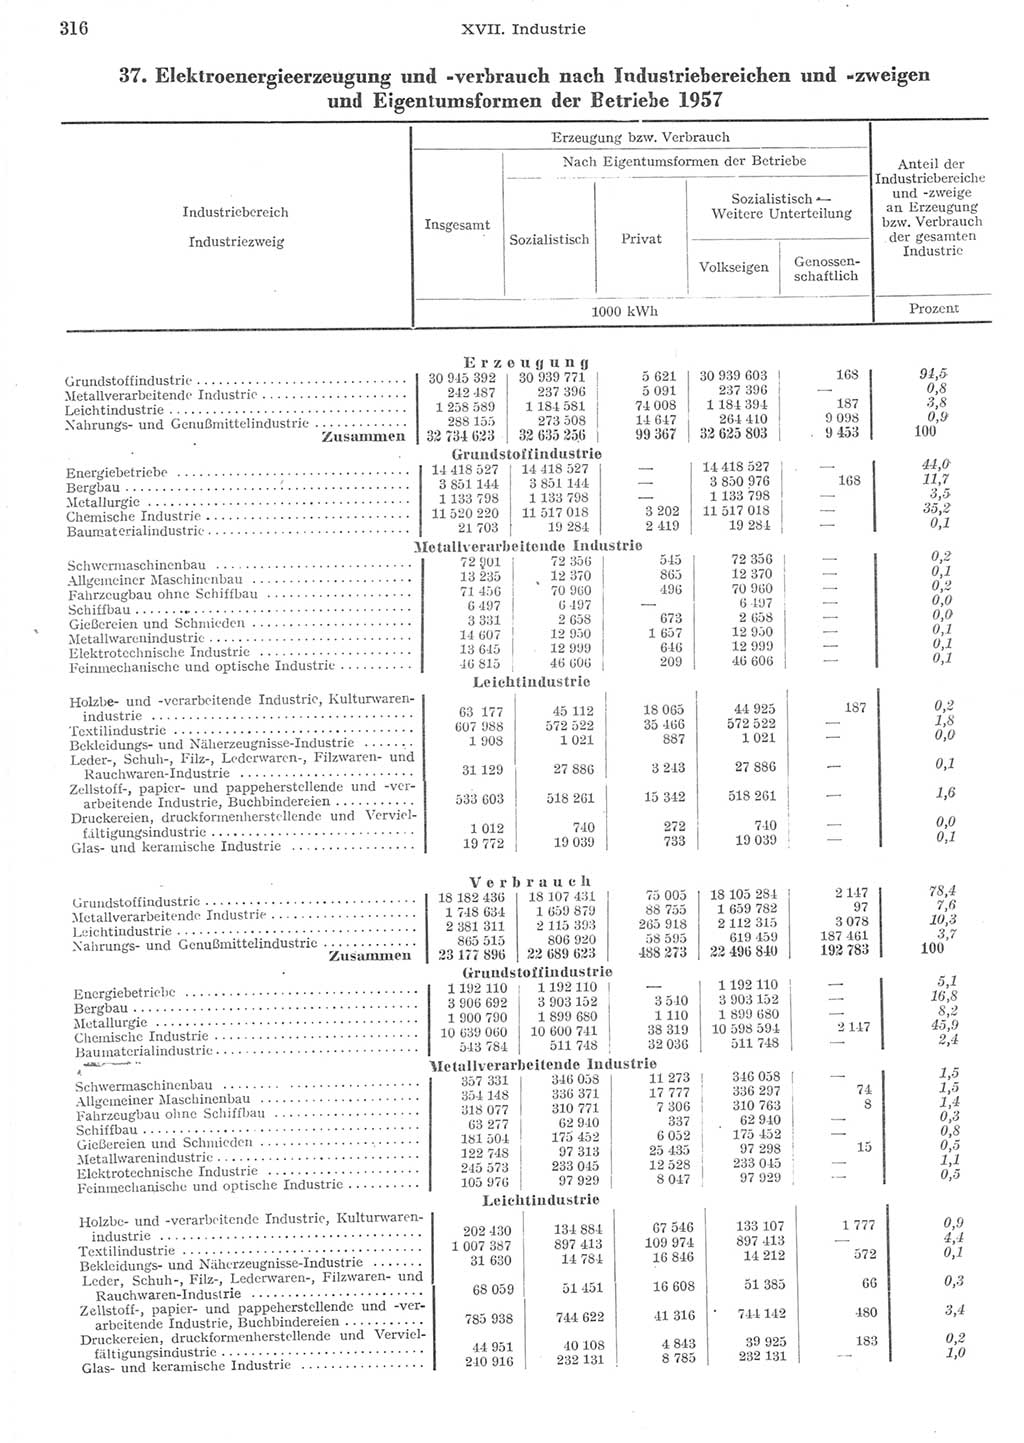 Statistisches Jahrbuch der Deutschen Demokratischen Republik (DDR) 1957, Seite 316 (Stat. Jb. DDR 1957, S. 316)